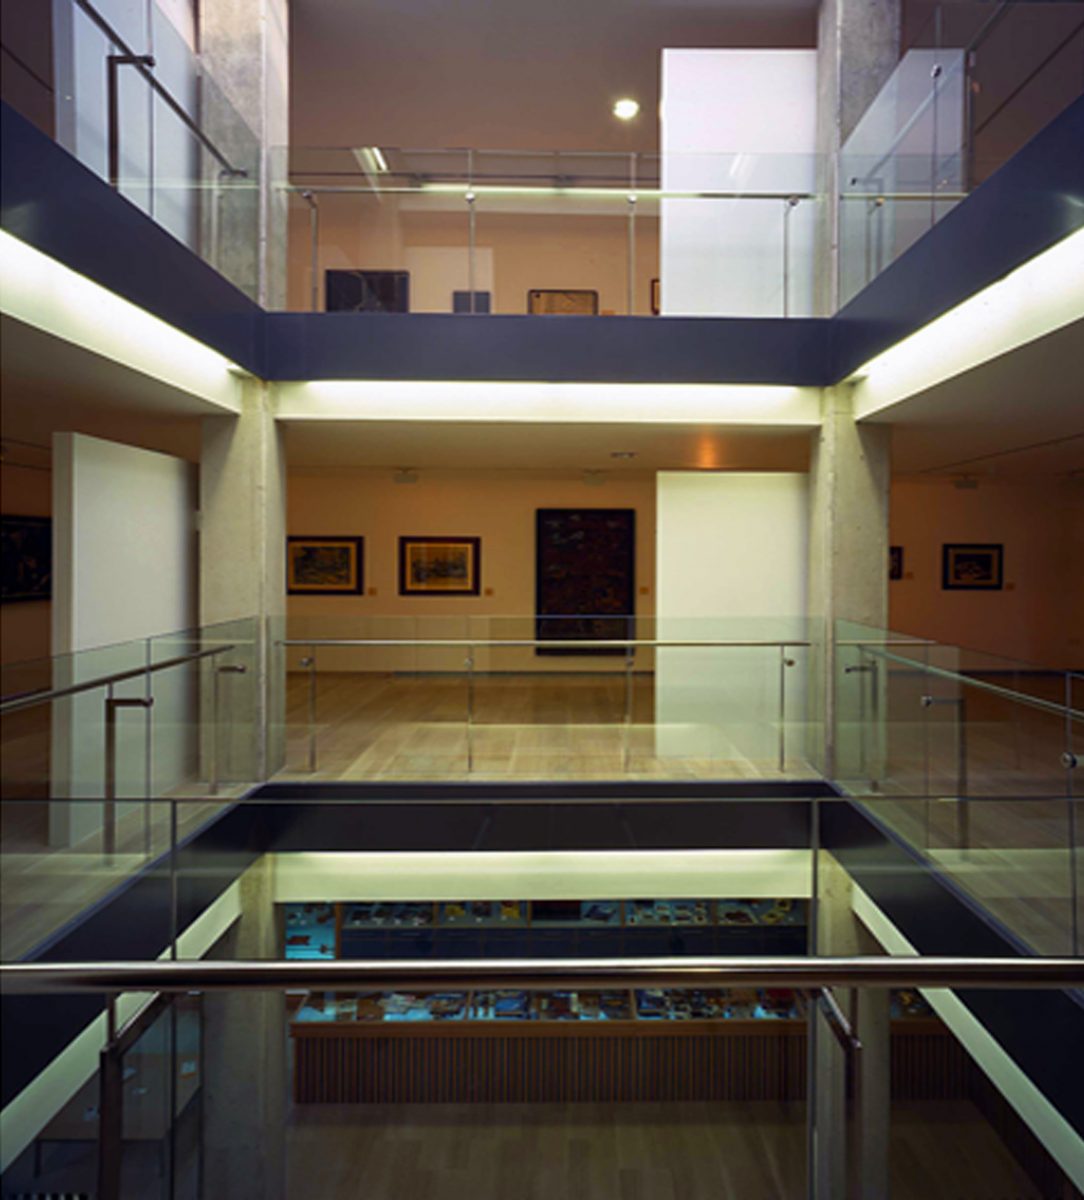 Vista interior del museu amb baranes de vidre